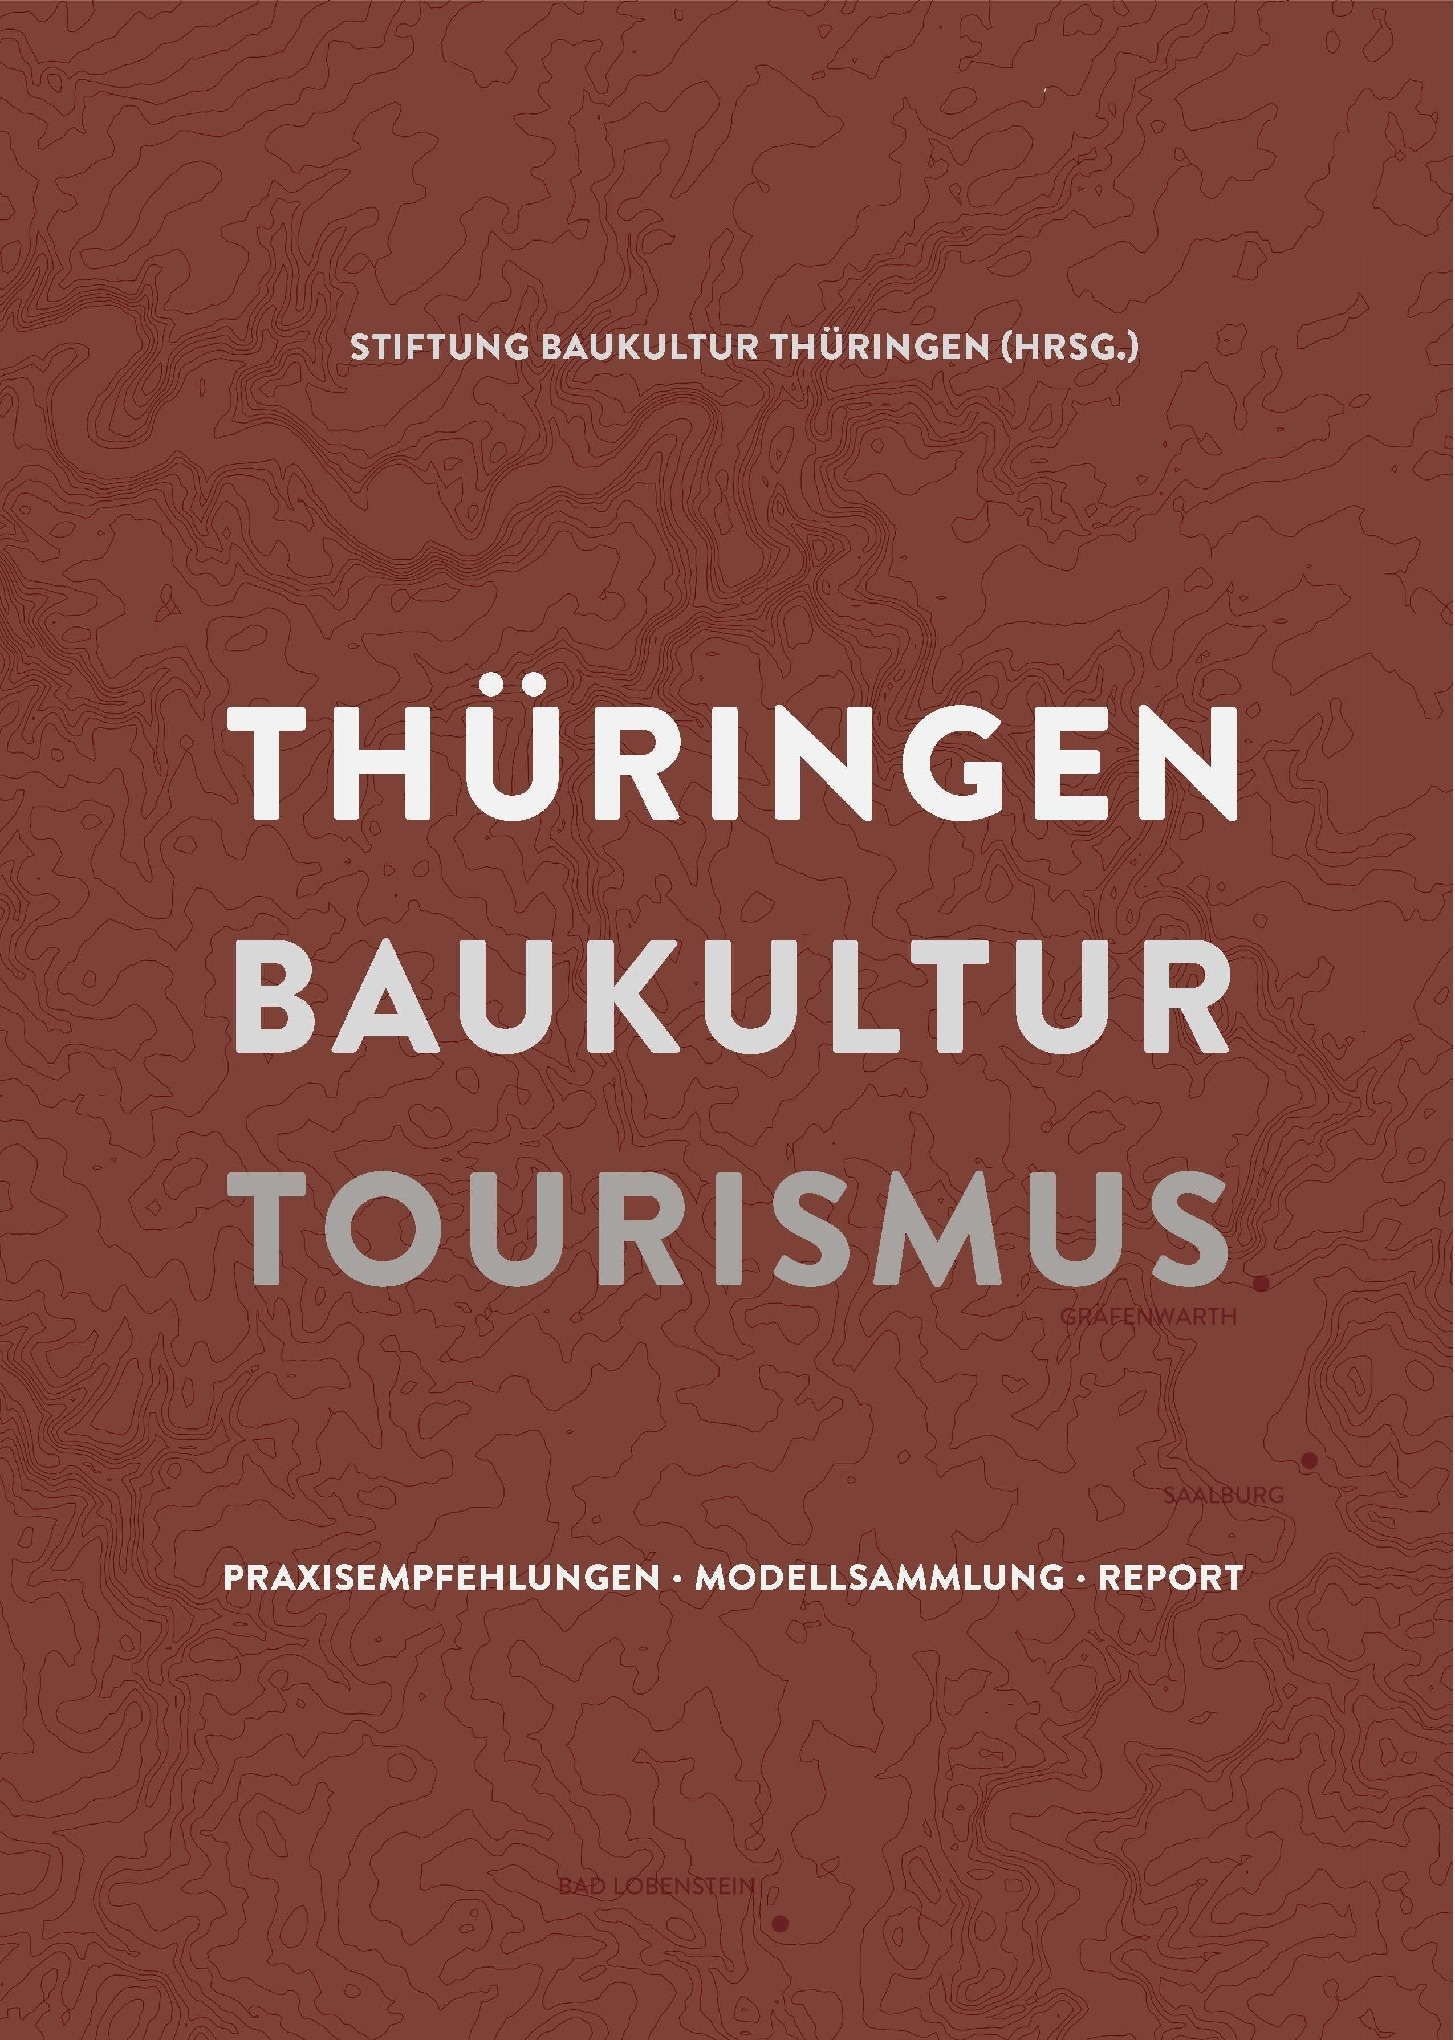 Publikation | Thüringen Baukultur Tourismus, Bild: Stiftung Baukultur Thüringen